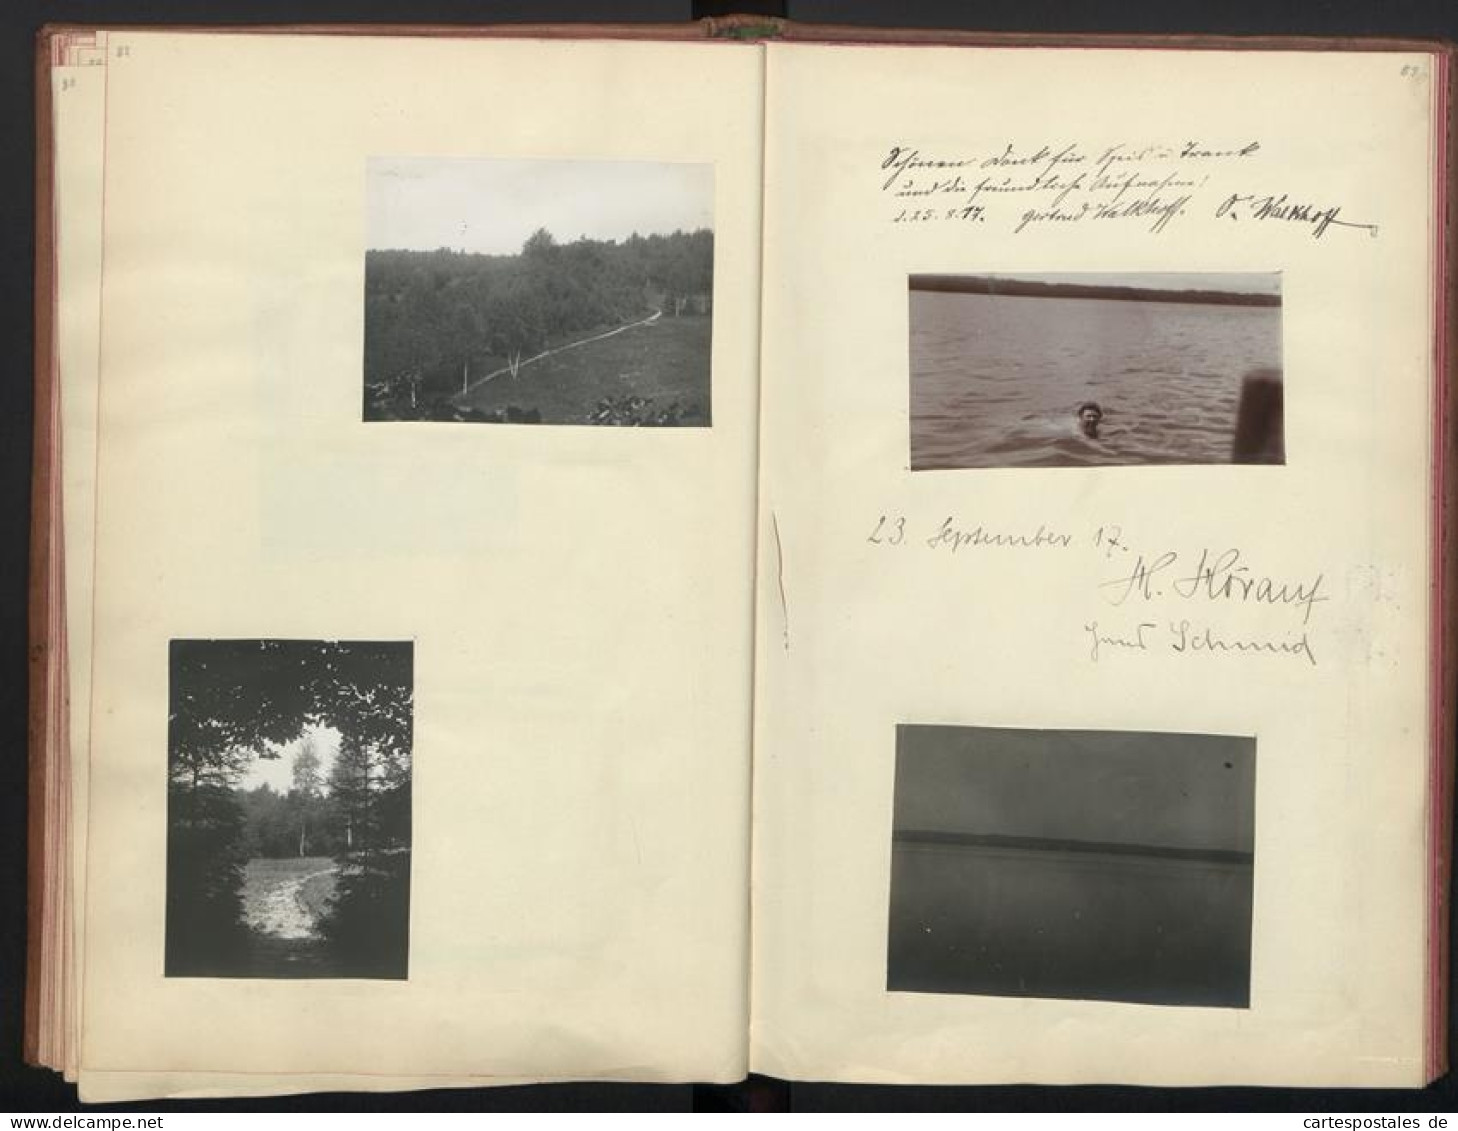 Fotoalbum mit 88 Fotografien, Ansicht Seeheim-Münsing, Ferienheim Seeleitn 10, Erbau und Betrieb, Starnberger See 